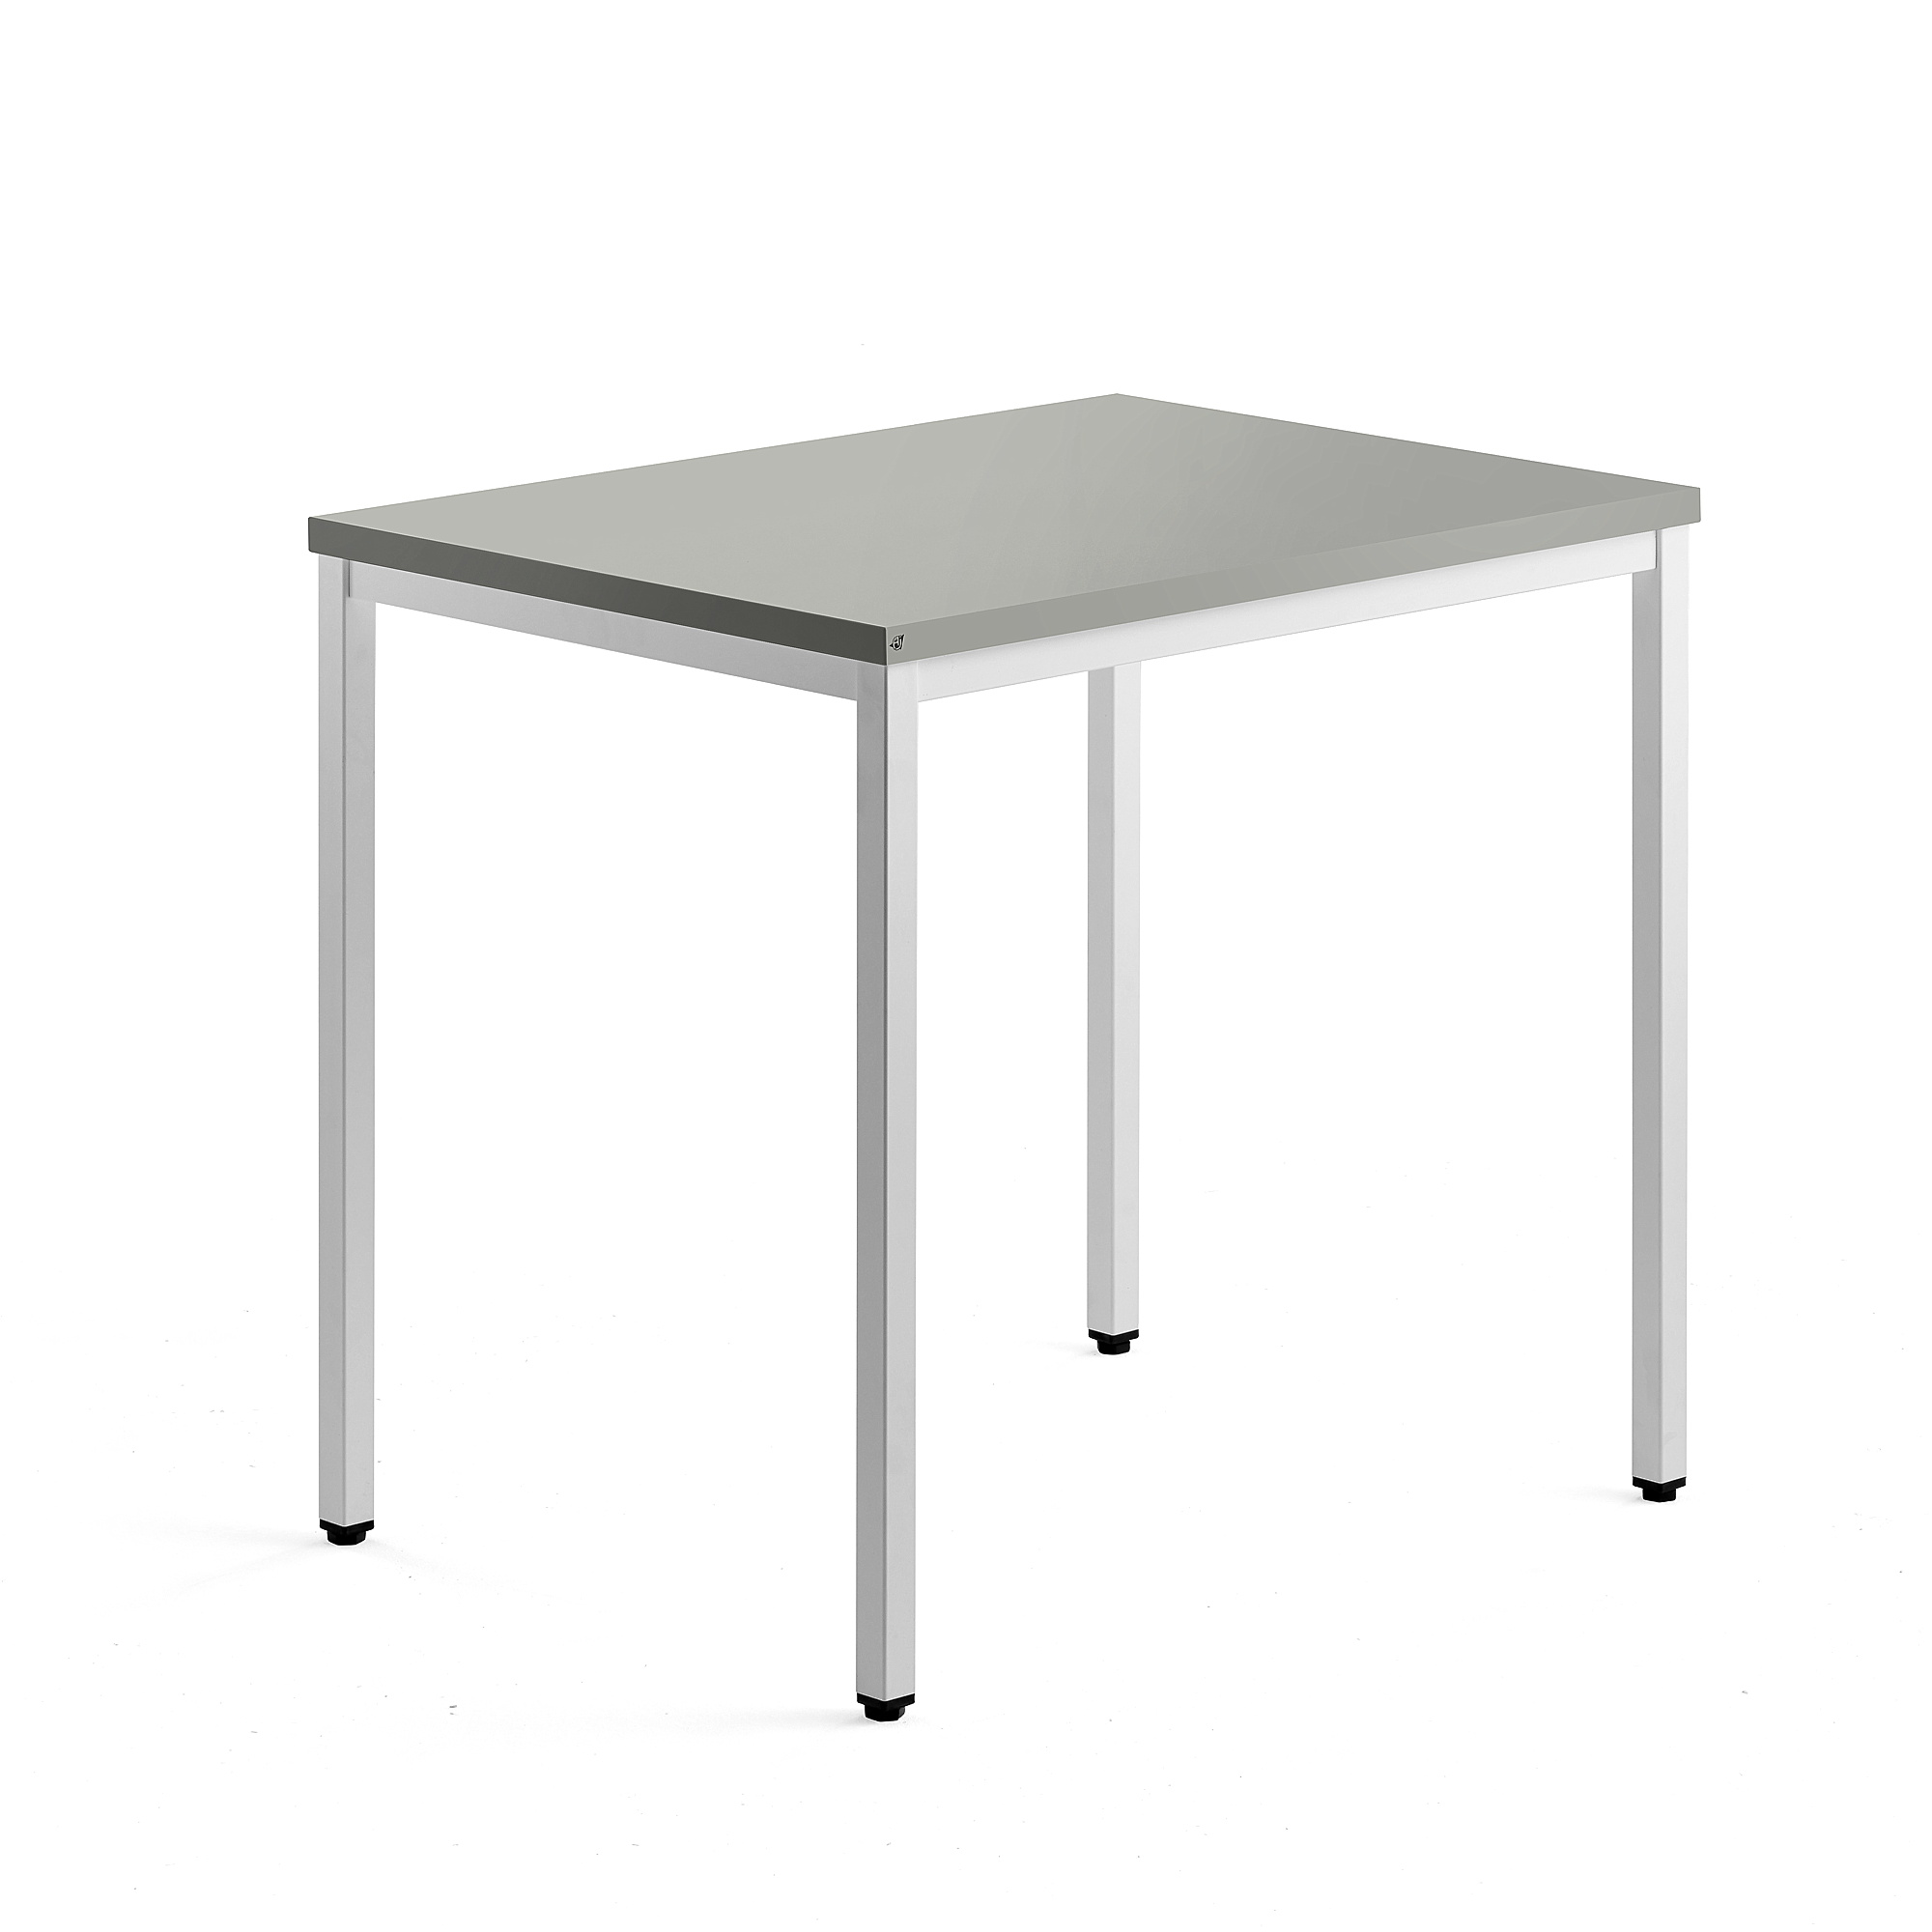 E-shop Bočný stolík QBUS, 4 nohy, 800x600 mm, biely rám, svetlošedá